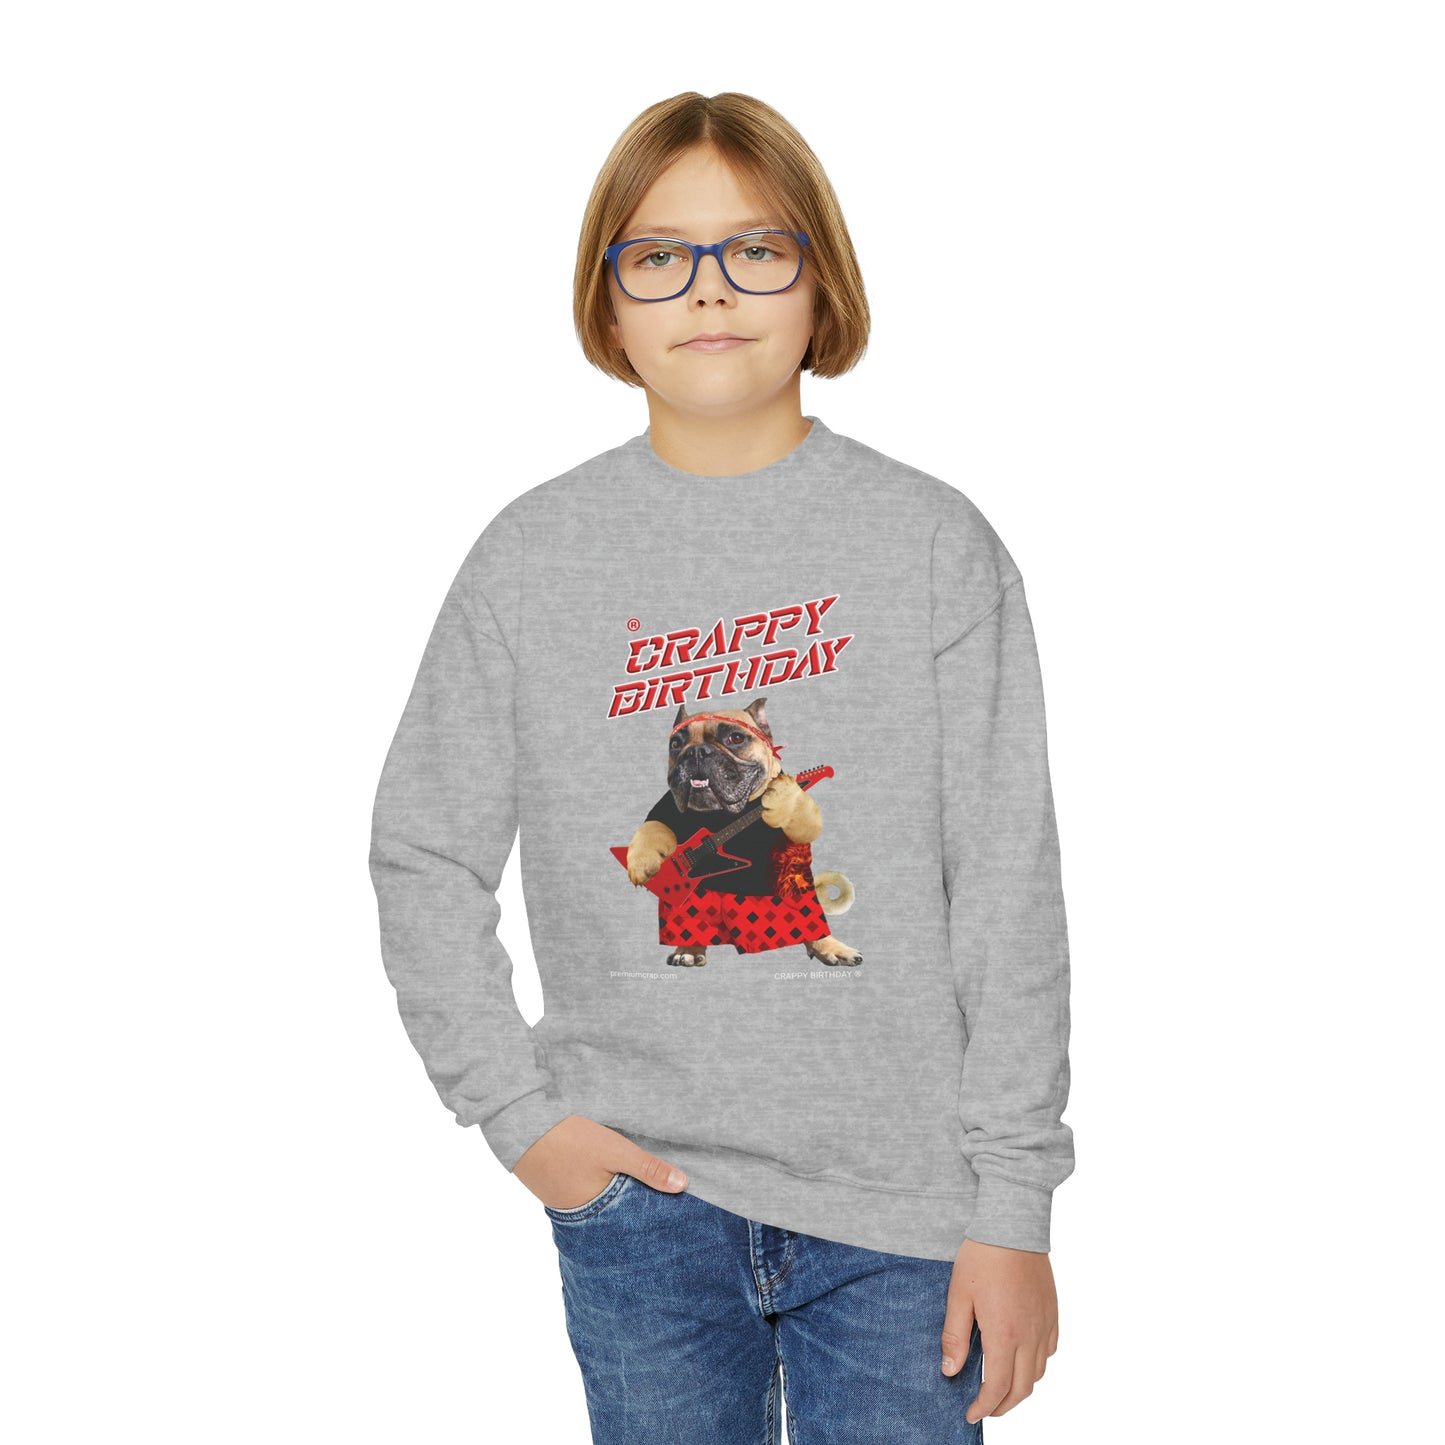 Crappy Birthday II Youth Crewneck Sweatshirt